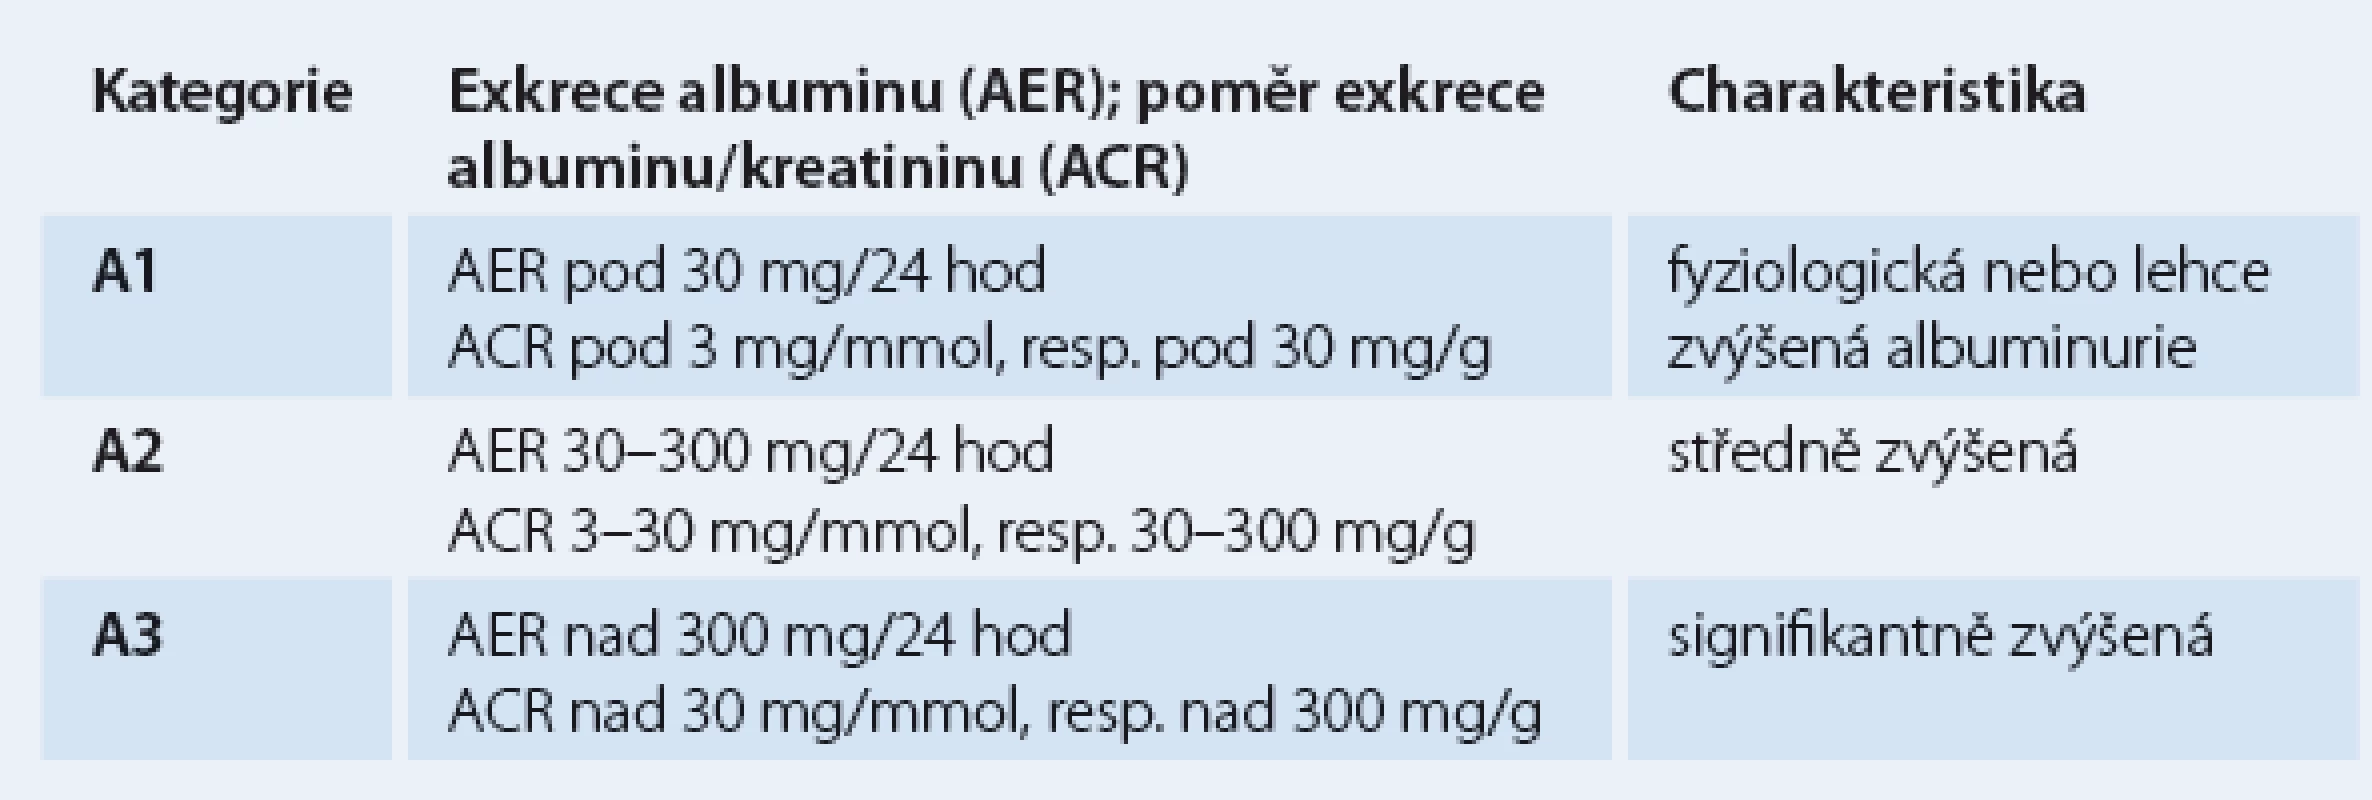 Klasifikace chronického onemocnění ledvin dle albuminurie.